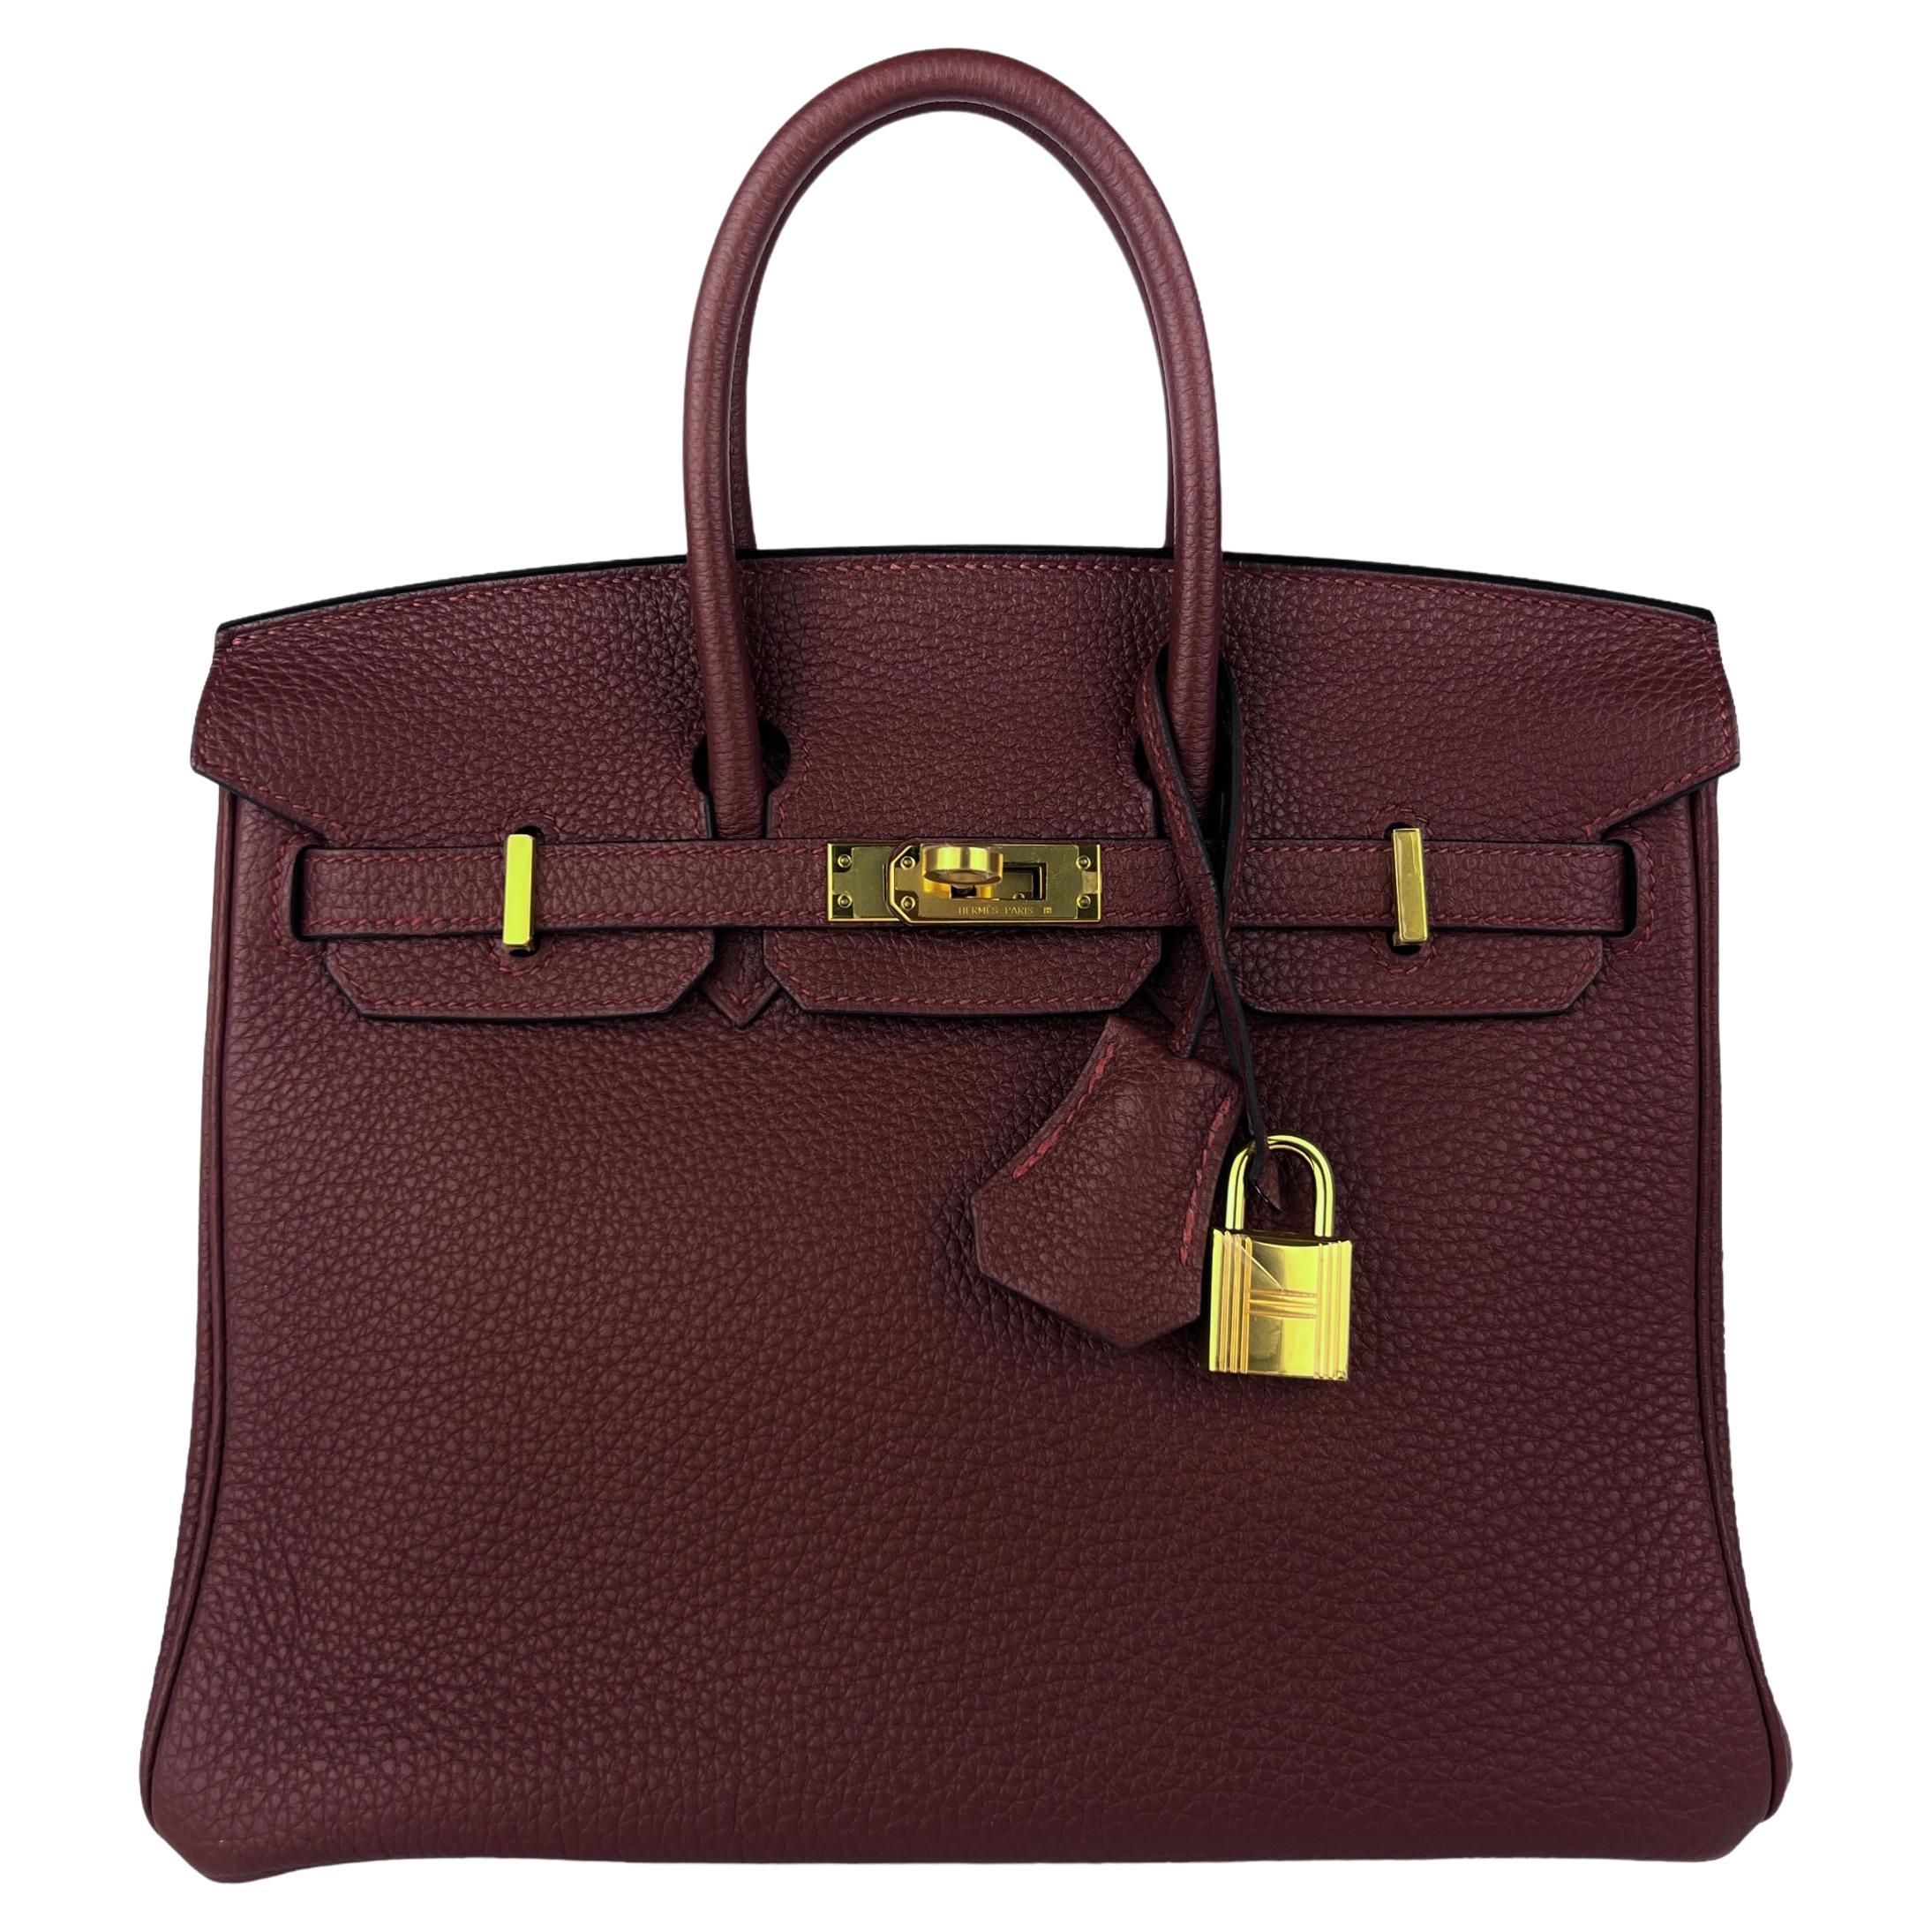 Hermes Birkin 25 Rouge Sellier Togo Leather Handbag Bag Gold Hardware RARE